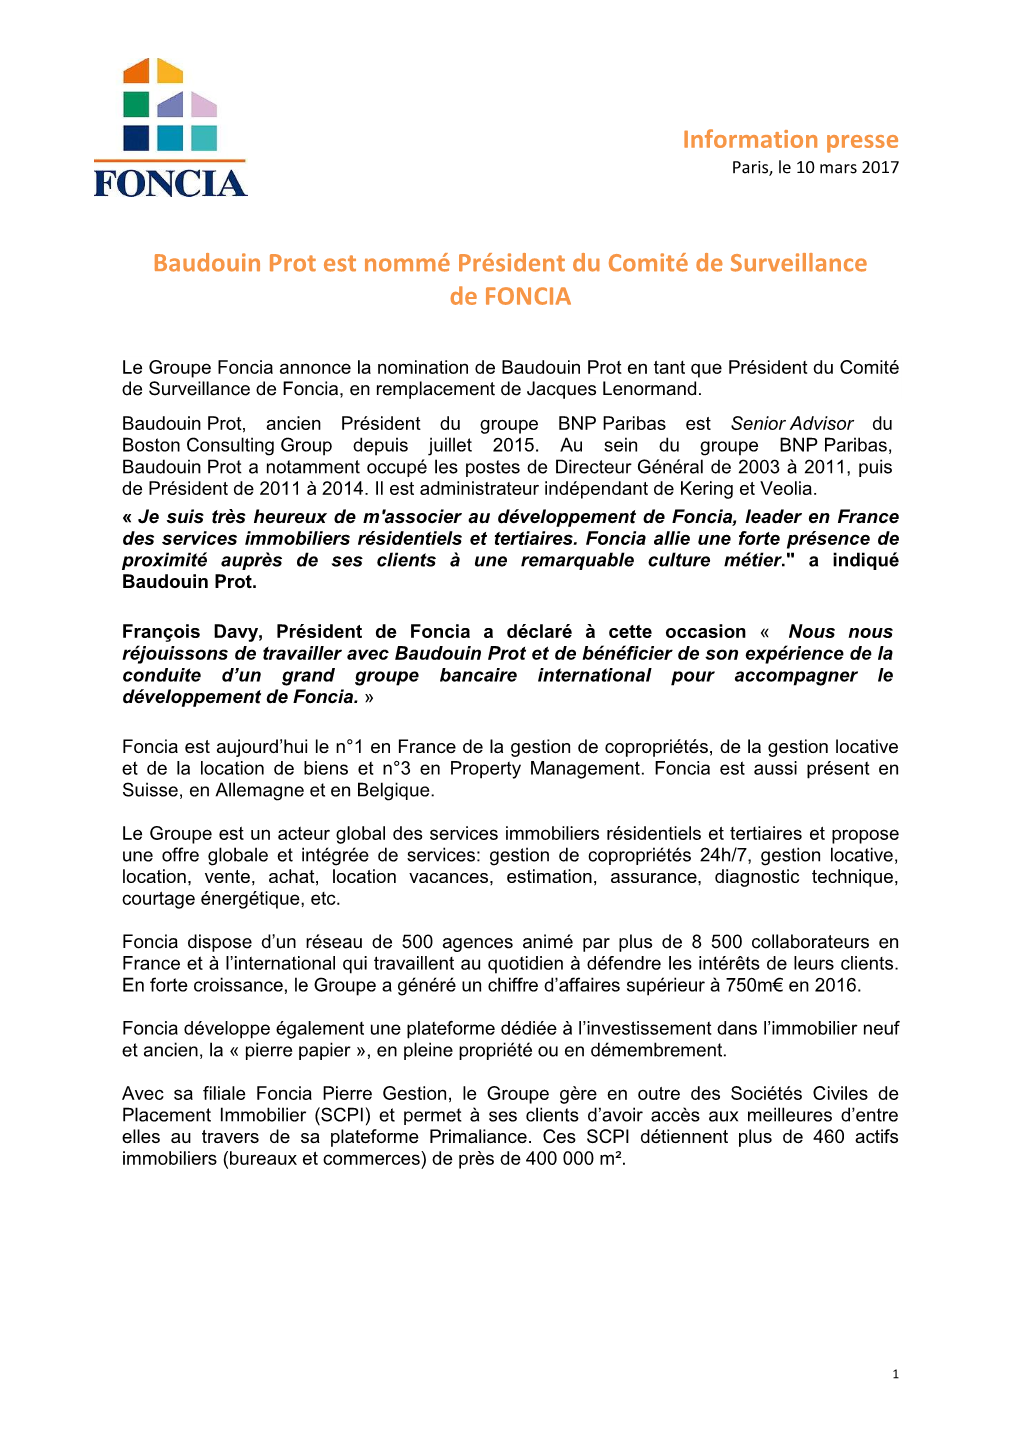 Information Presse Baudouin Prot Est Nommé Président Du Comité De